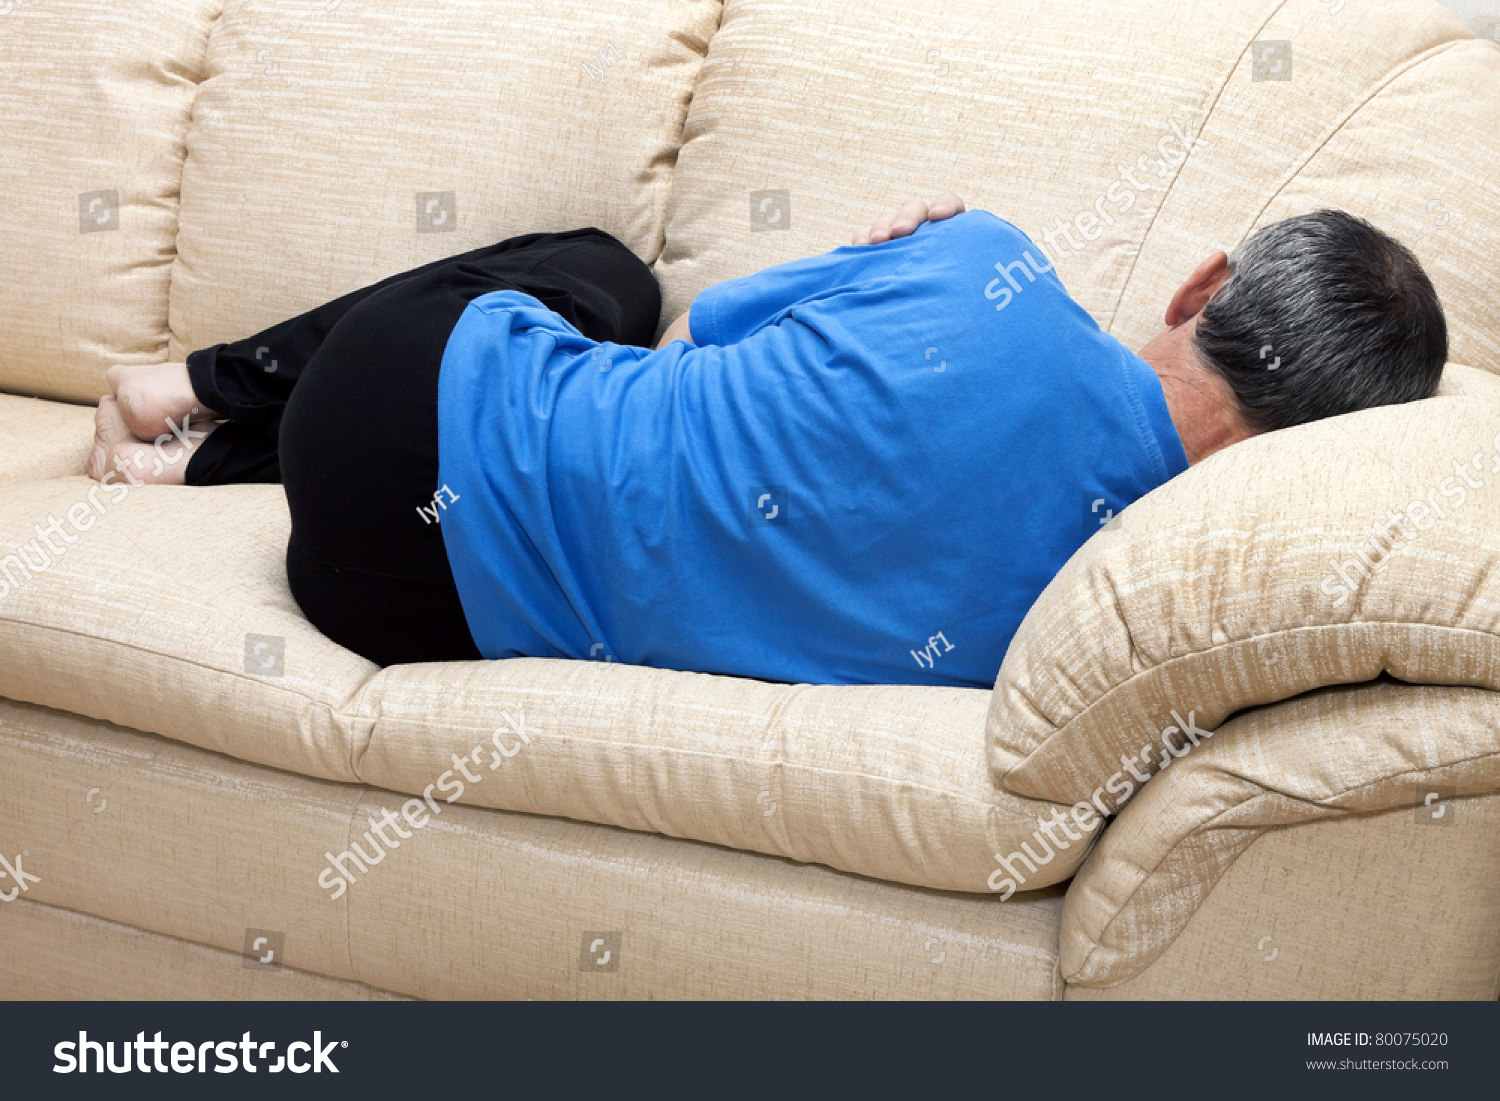 Спящий человек на диване